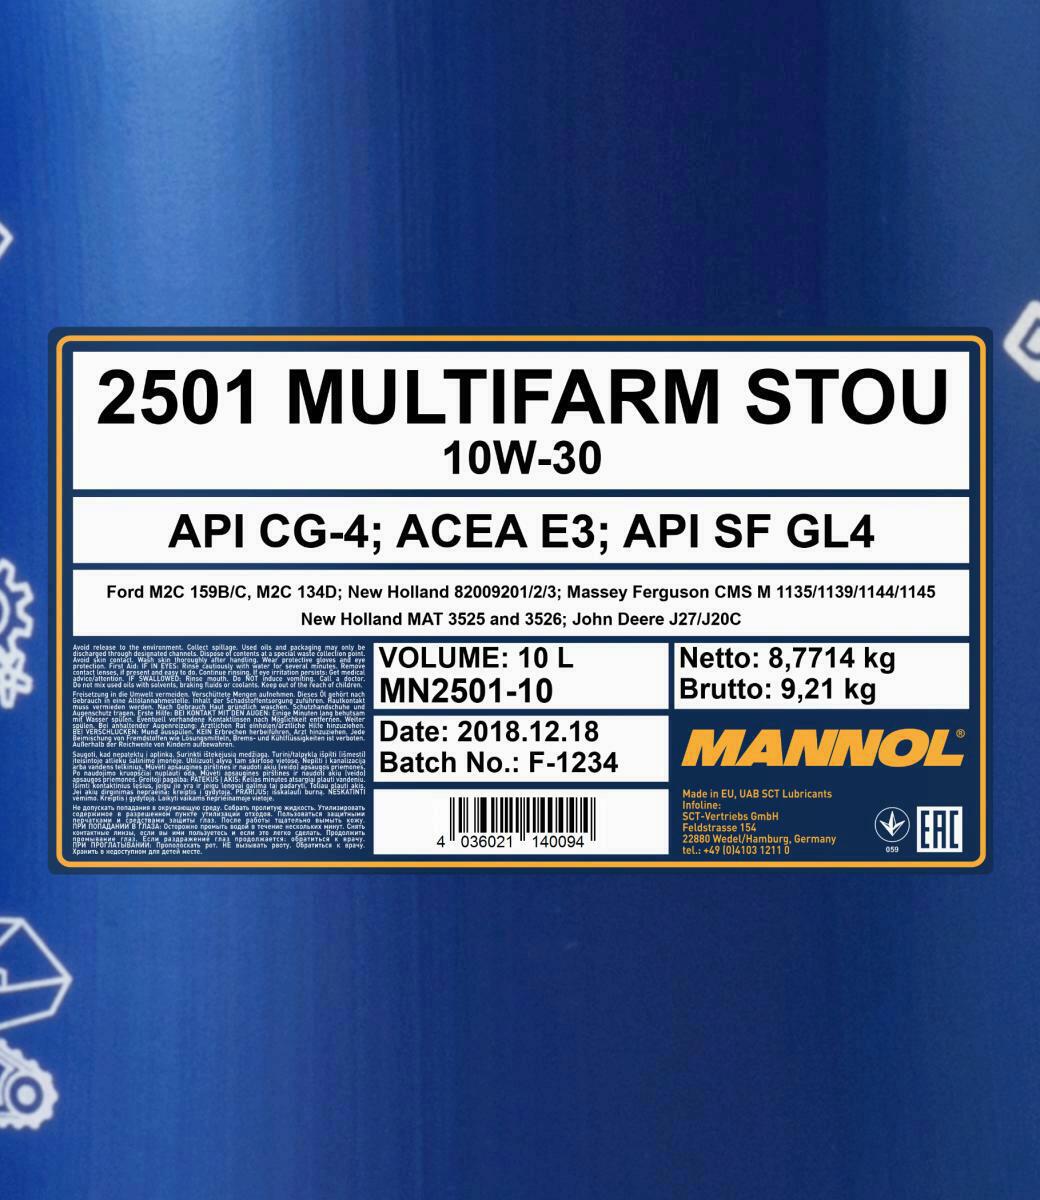 10L Mannol Motoröl Multifarm STOU 10W-30